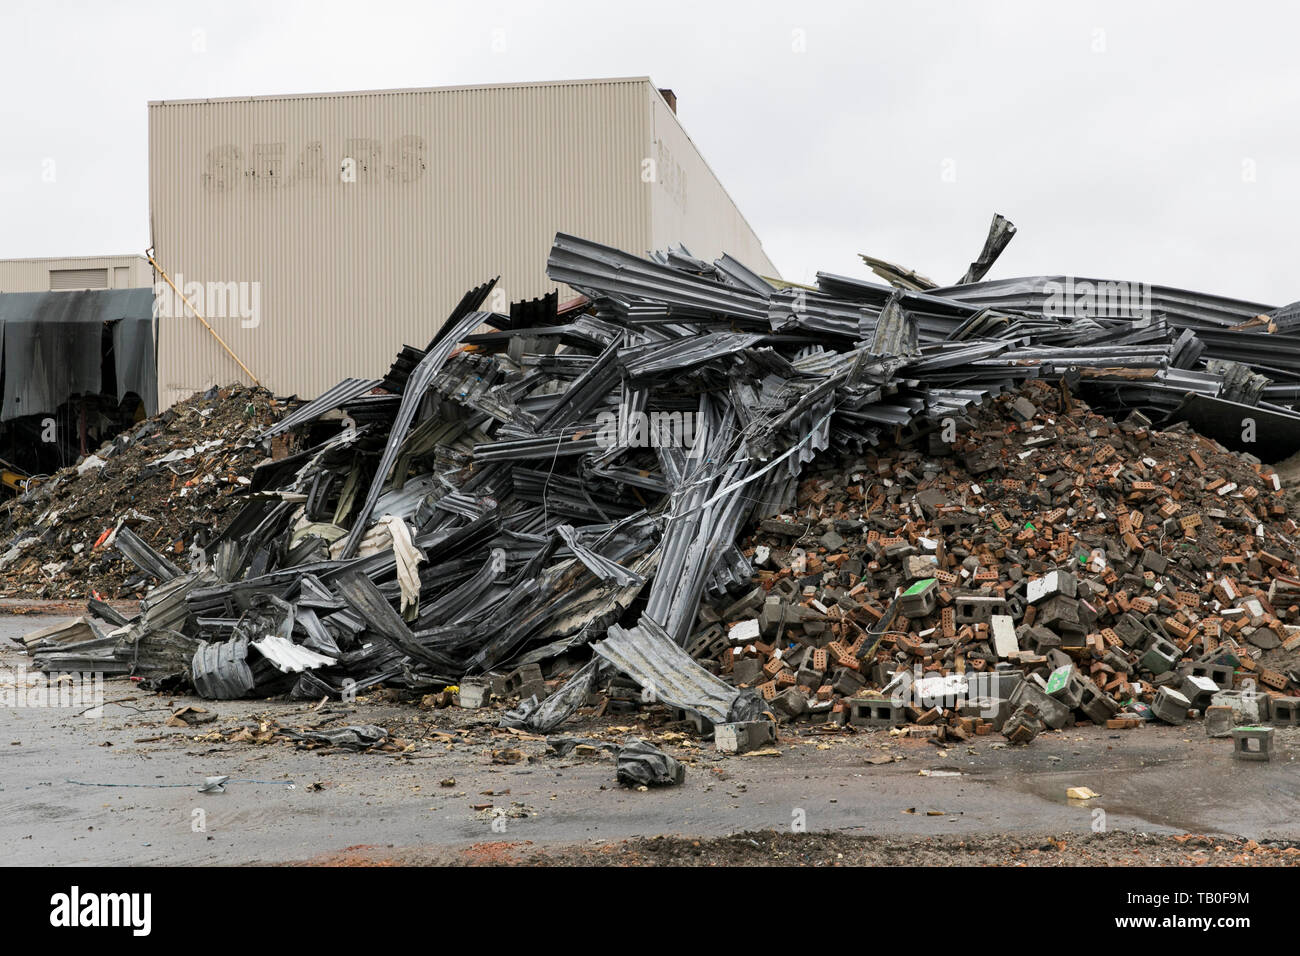 Entoure de débris le site d'un magasin de détail Sears fermé lors de sa démolition, à Ottawa, Ontario, Canada, le 20 avril 2019. Banque D'Images